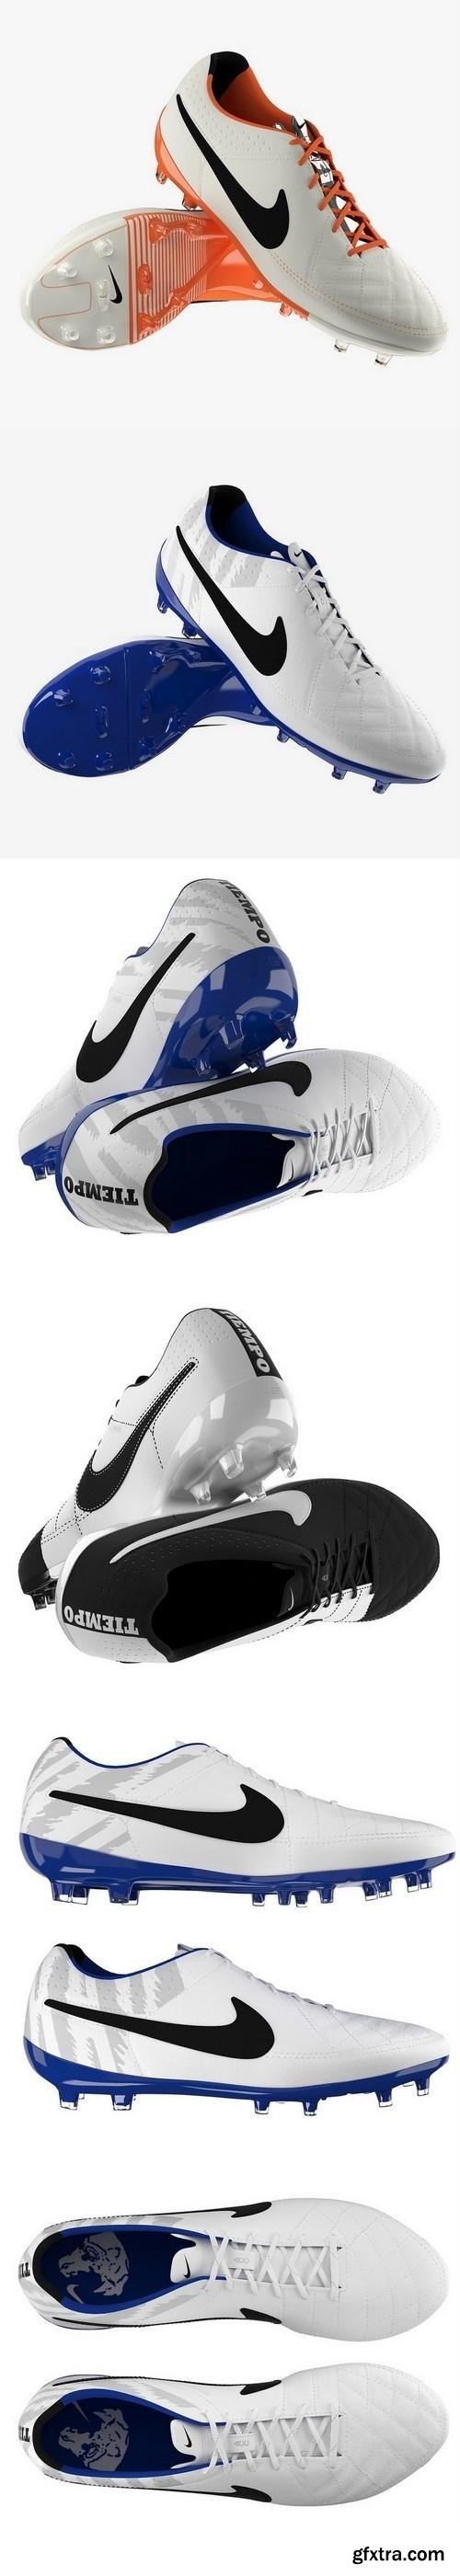 Nike Tiempo Legend V Football Boots 3d Models